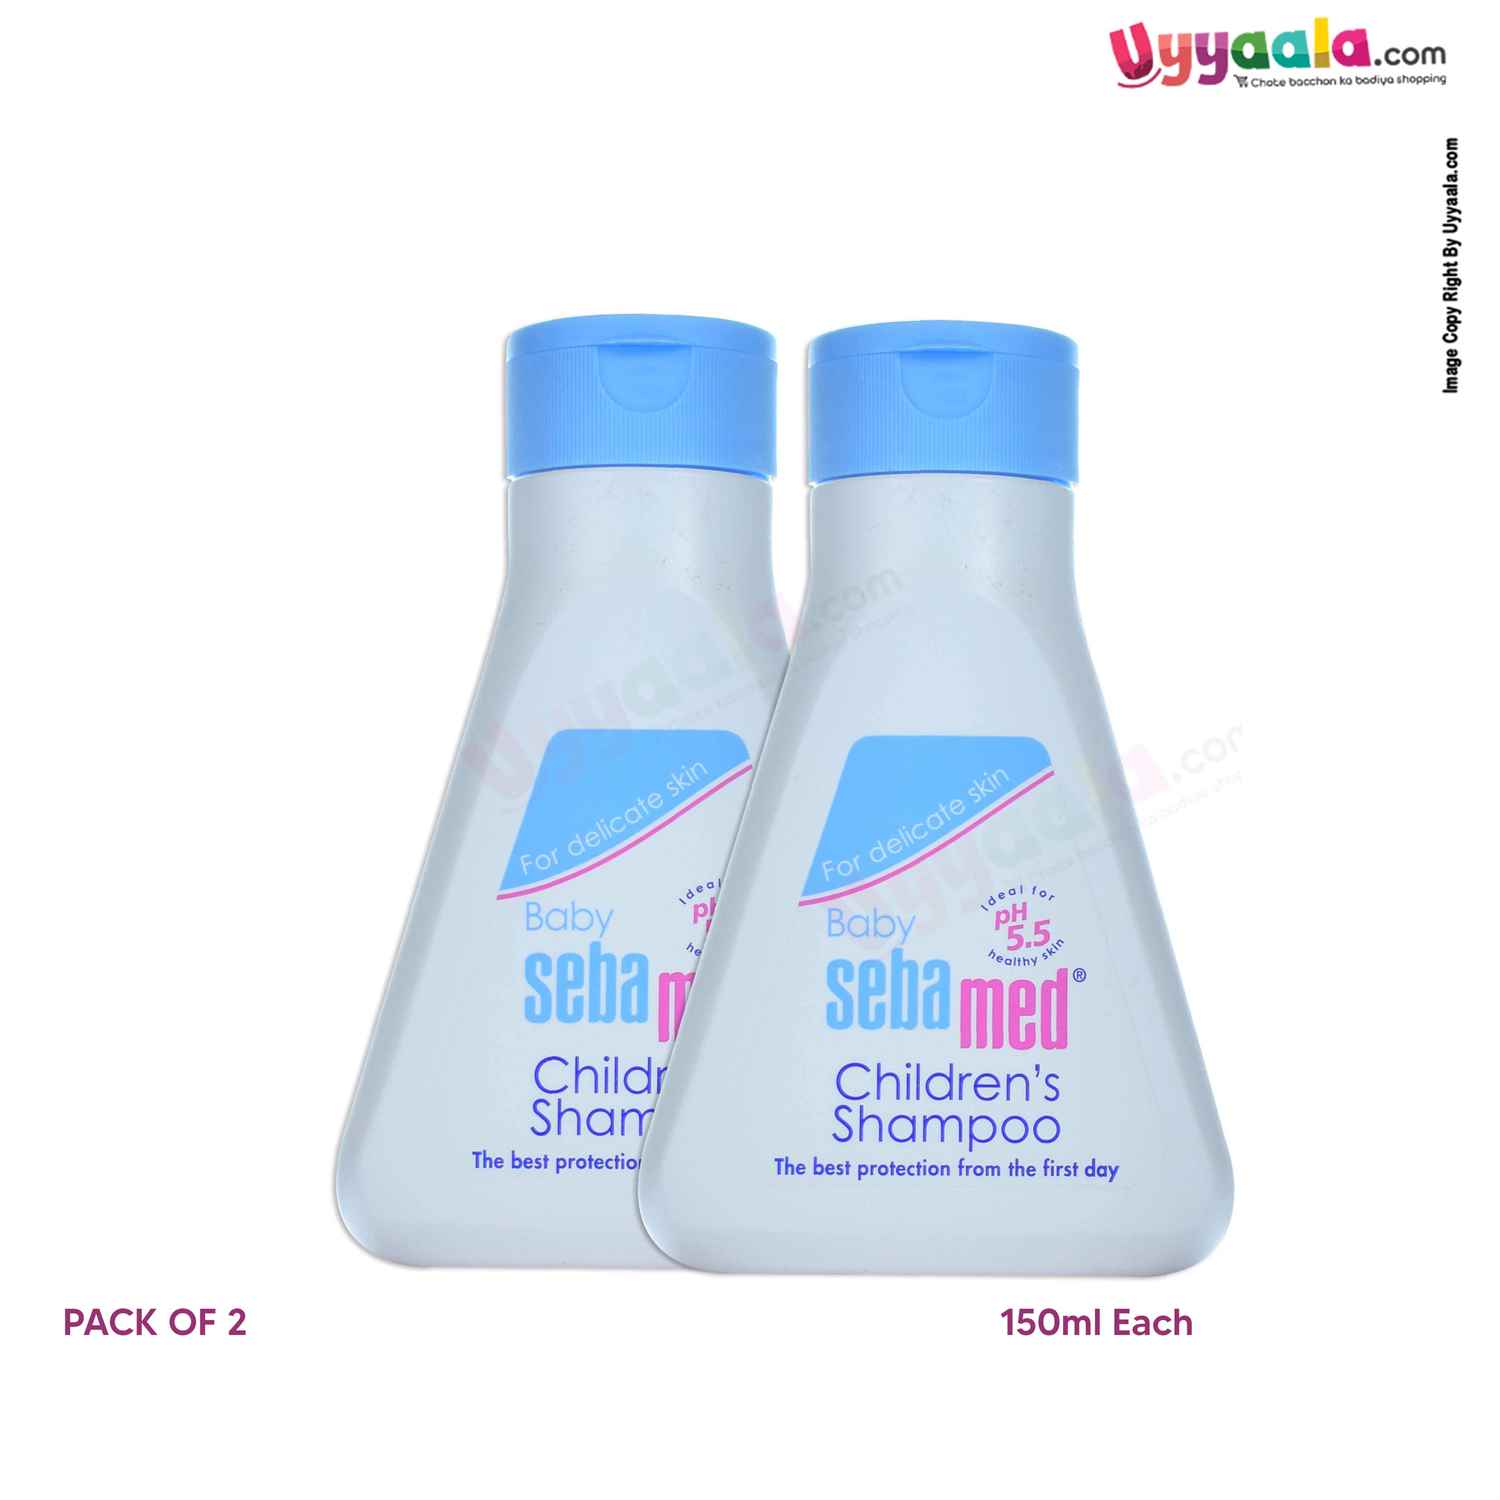 Sebamed Children’s Shampoo,Pack of 2 (150ml Each)